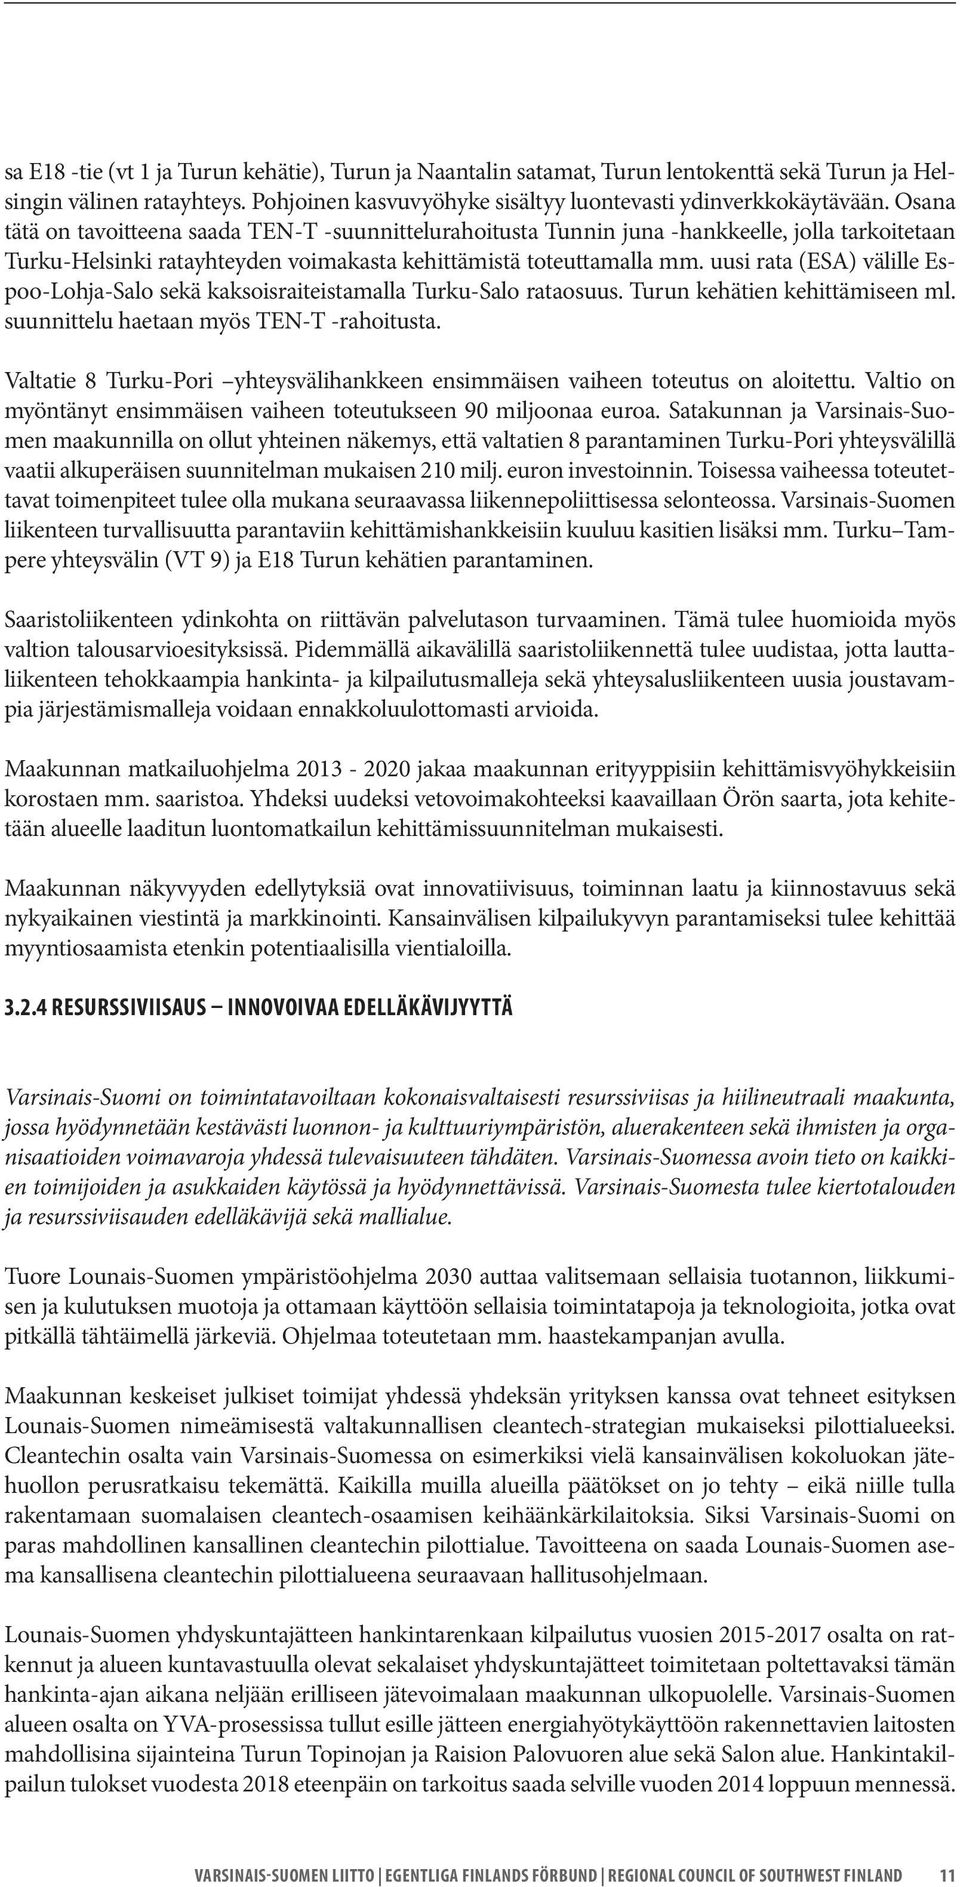 uusi rata (ESA) välille Espoo-Lohja-Salo sekä kaksoisraiteistamalla Turku-Salo rataosuus. Turun kehätien kehittämiseen ml. suunnittelu haetaan myös TEN-T -rahoitusta.